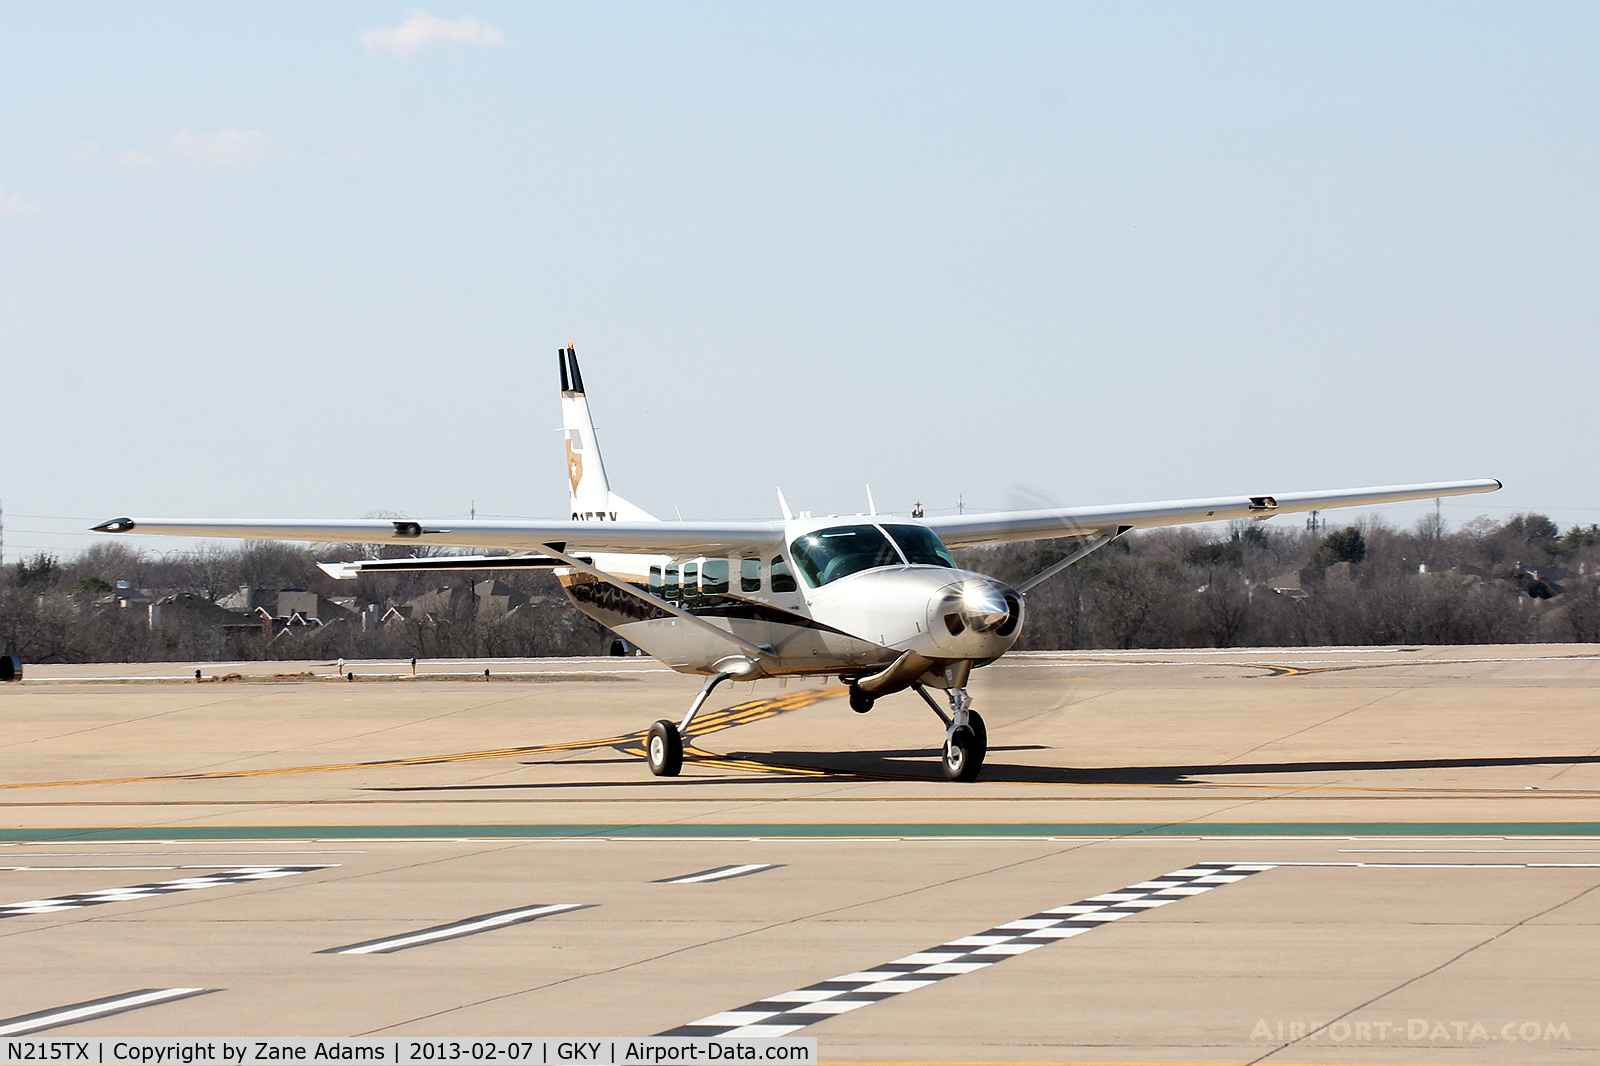 N215TX, 2012 Cessna 208 Caravan 1 C/N 20800542, Texas DPS Caravan at Arlington Municipal